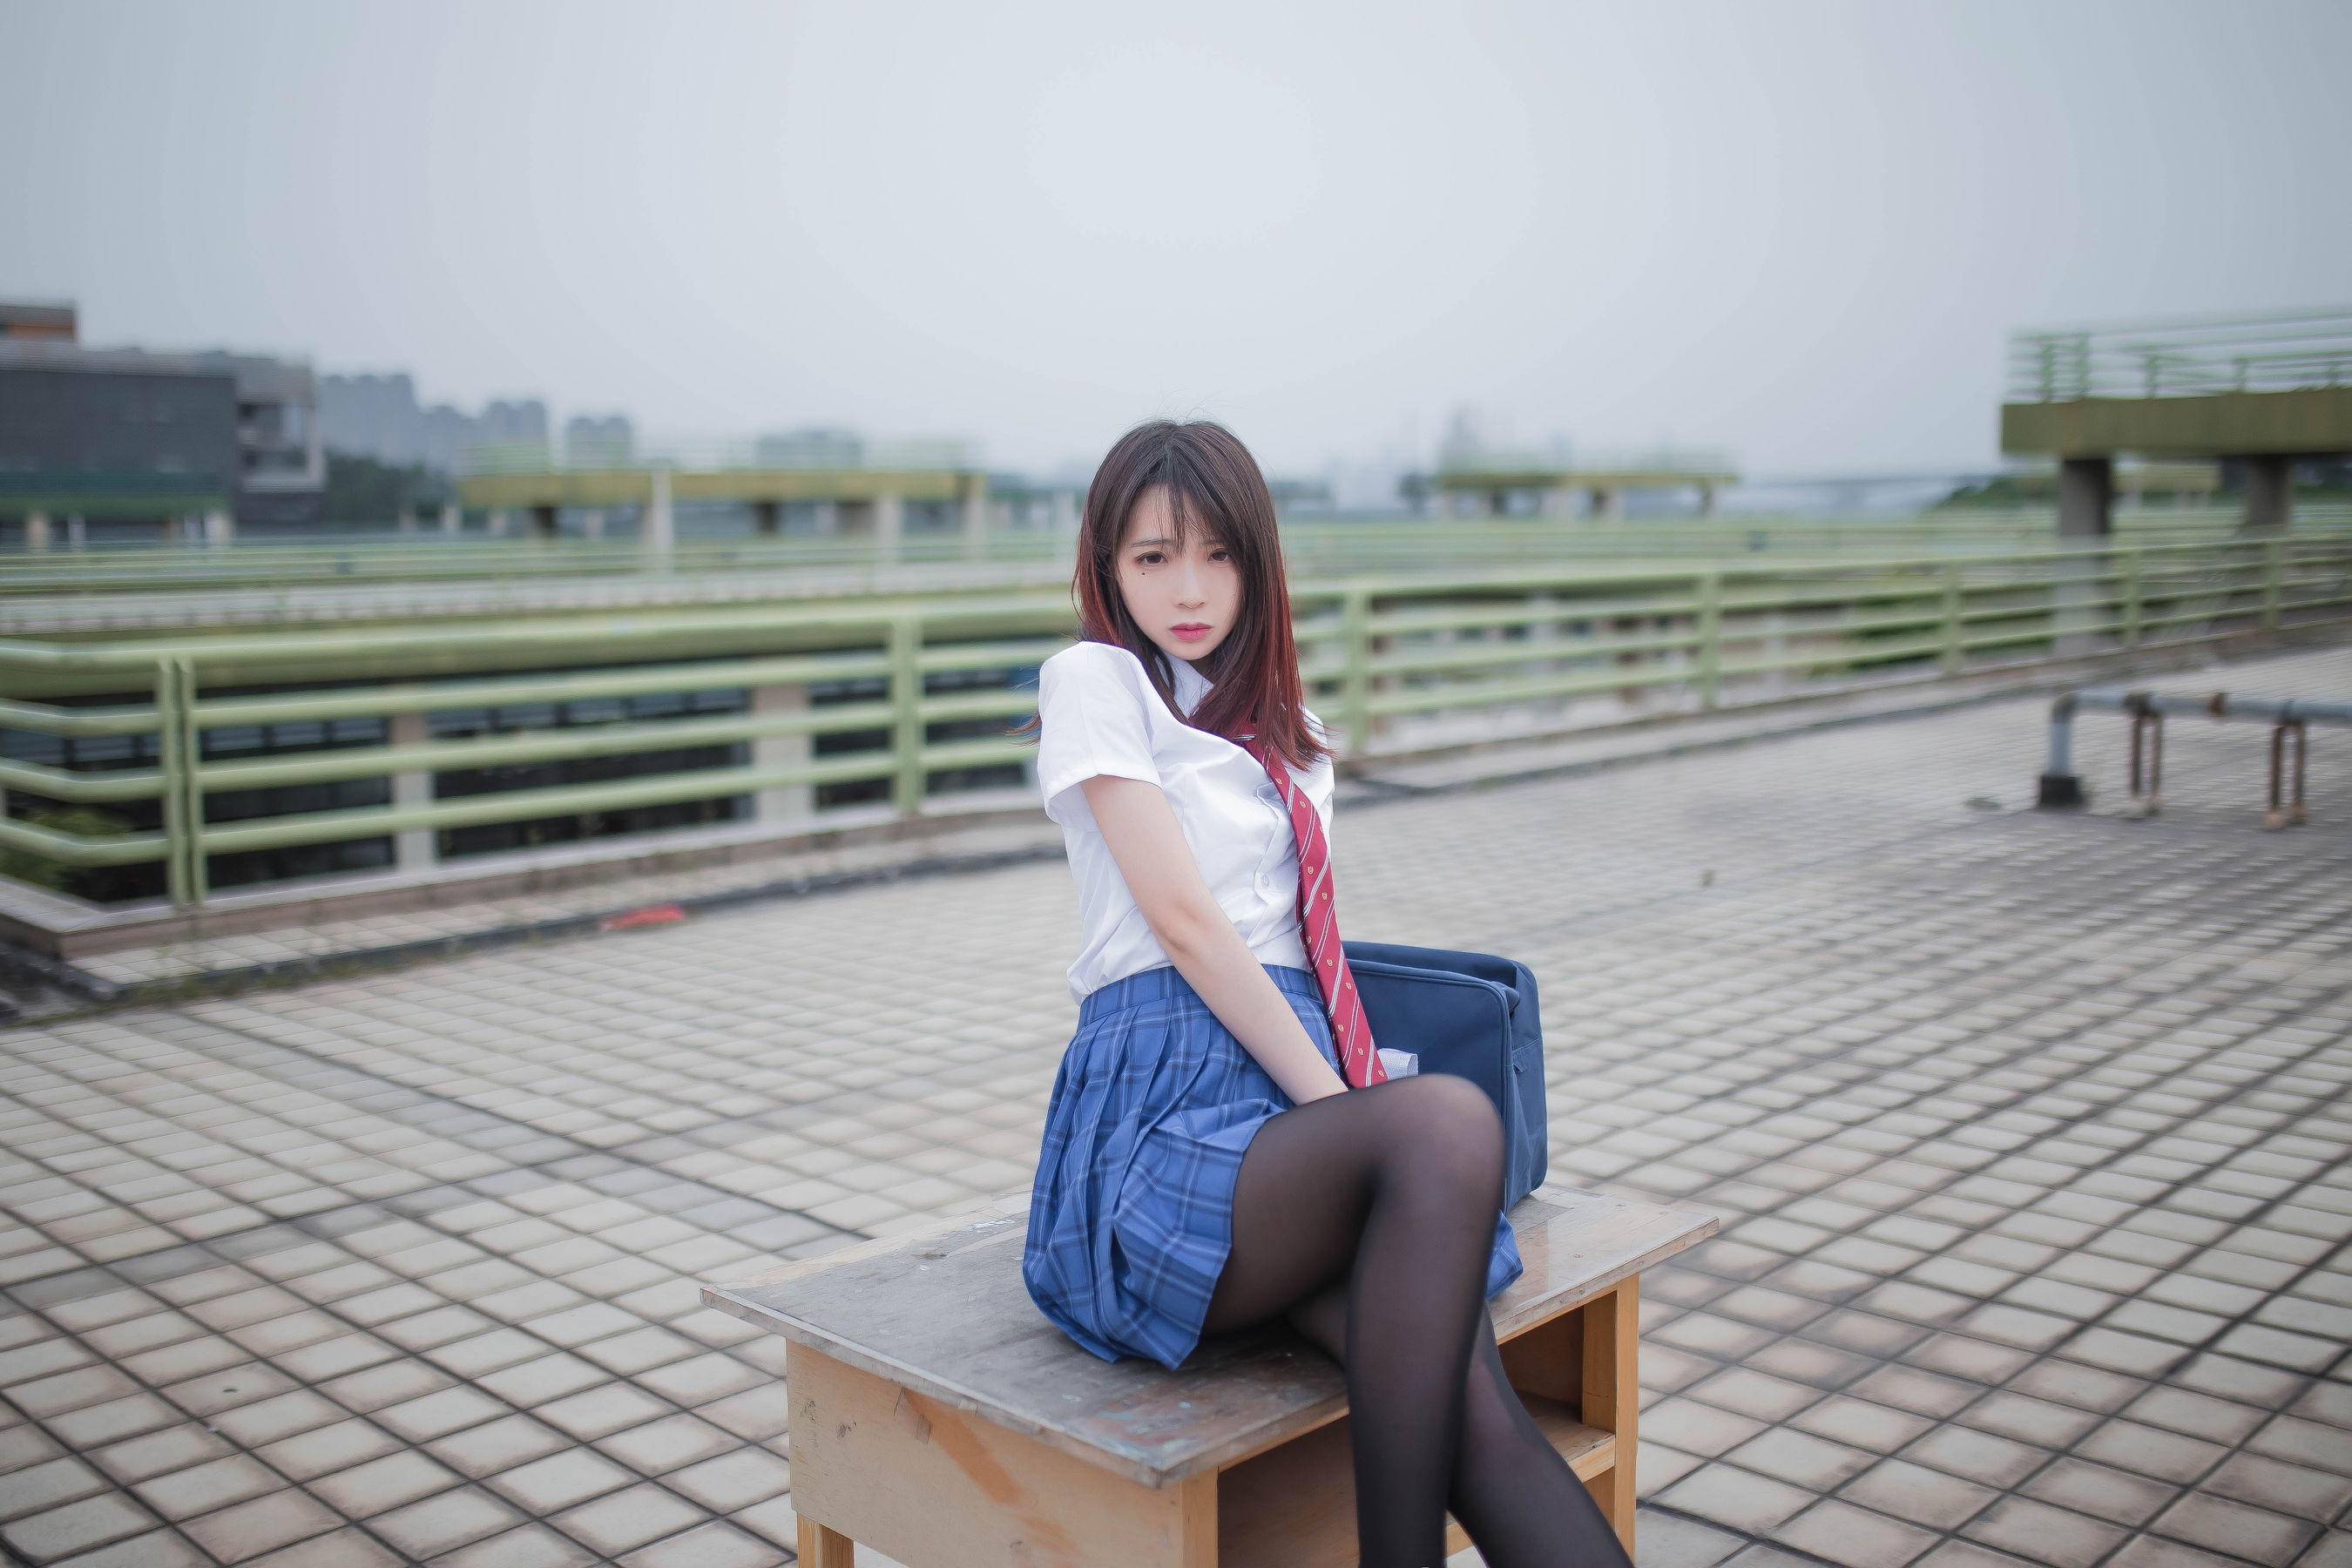 People 2700x1800 women model Asian long hair women outdoors brunette urban school uniform Feng Mao